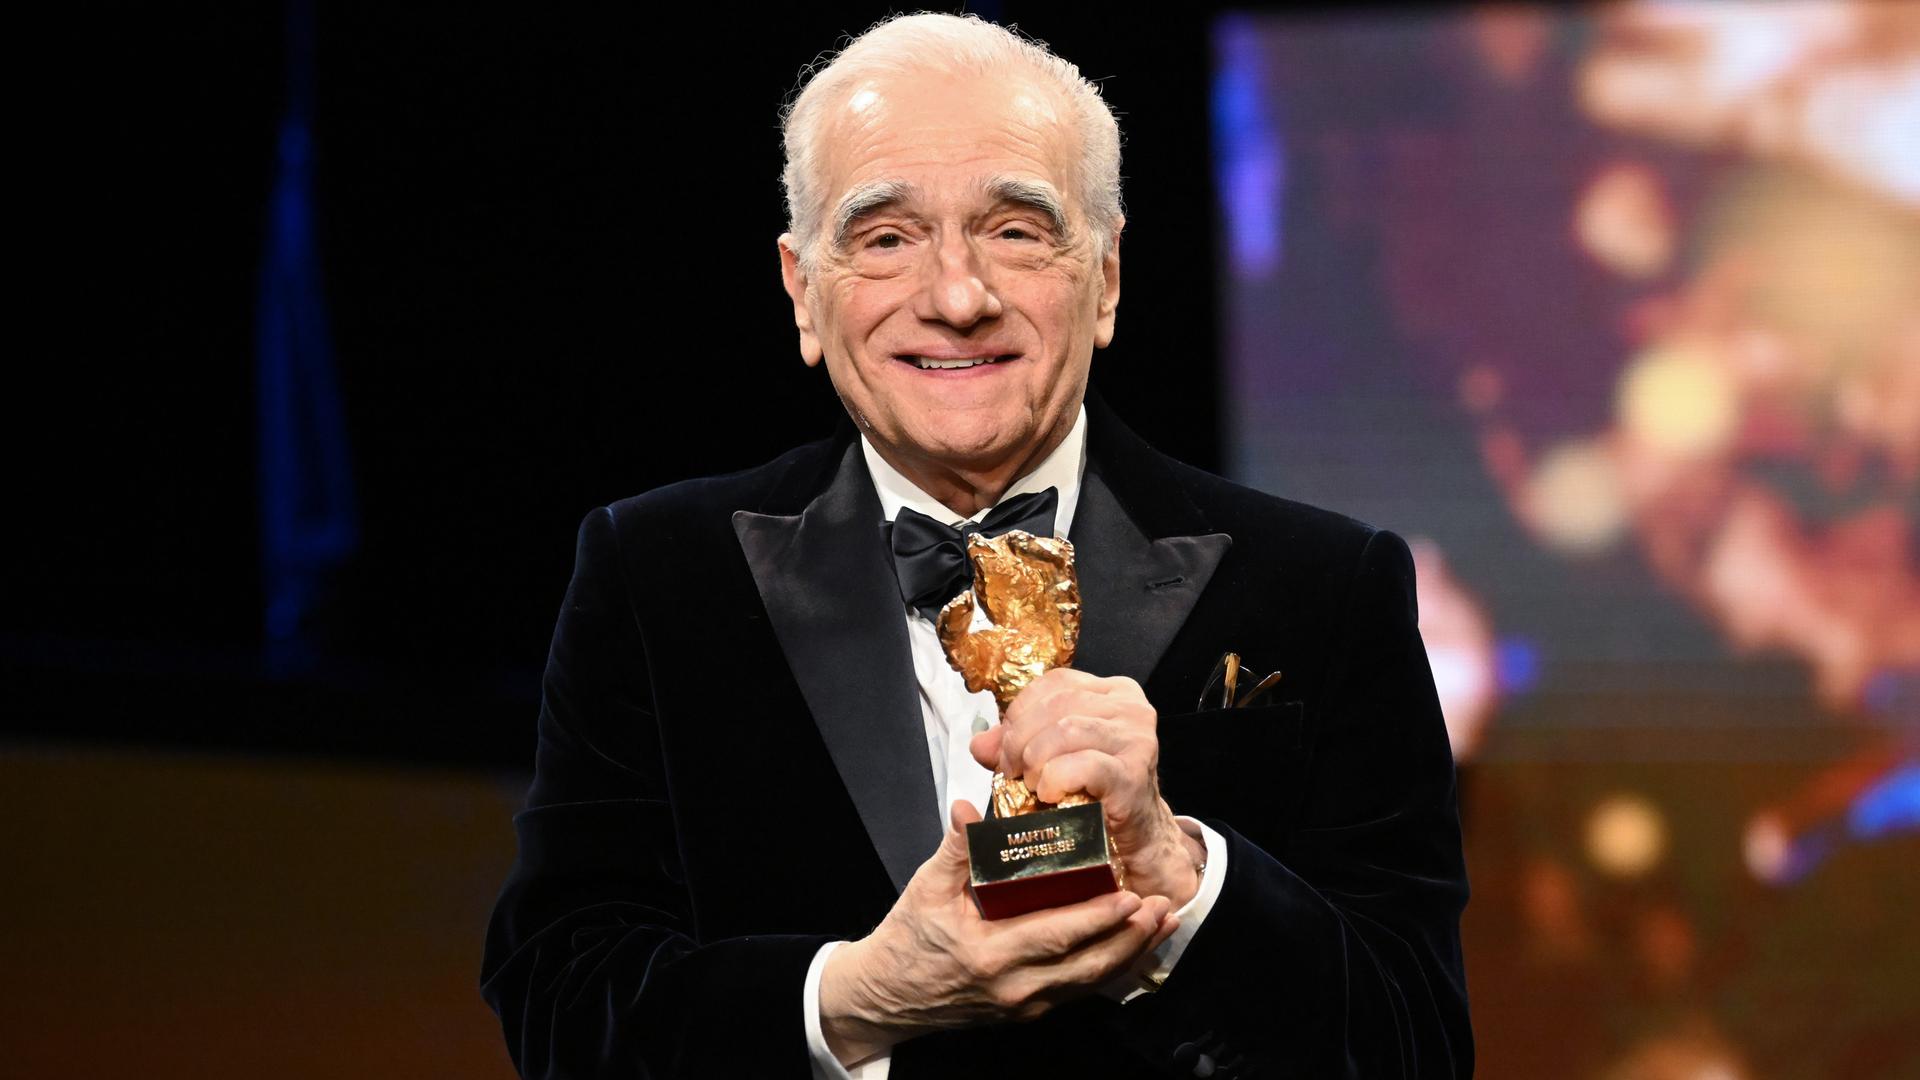  US-Regisseur Martin Scorsese erhält den Goldenen Ehrenbären für sein Lebenswerk auf der Berlinale.